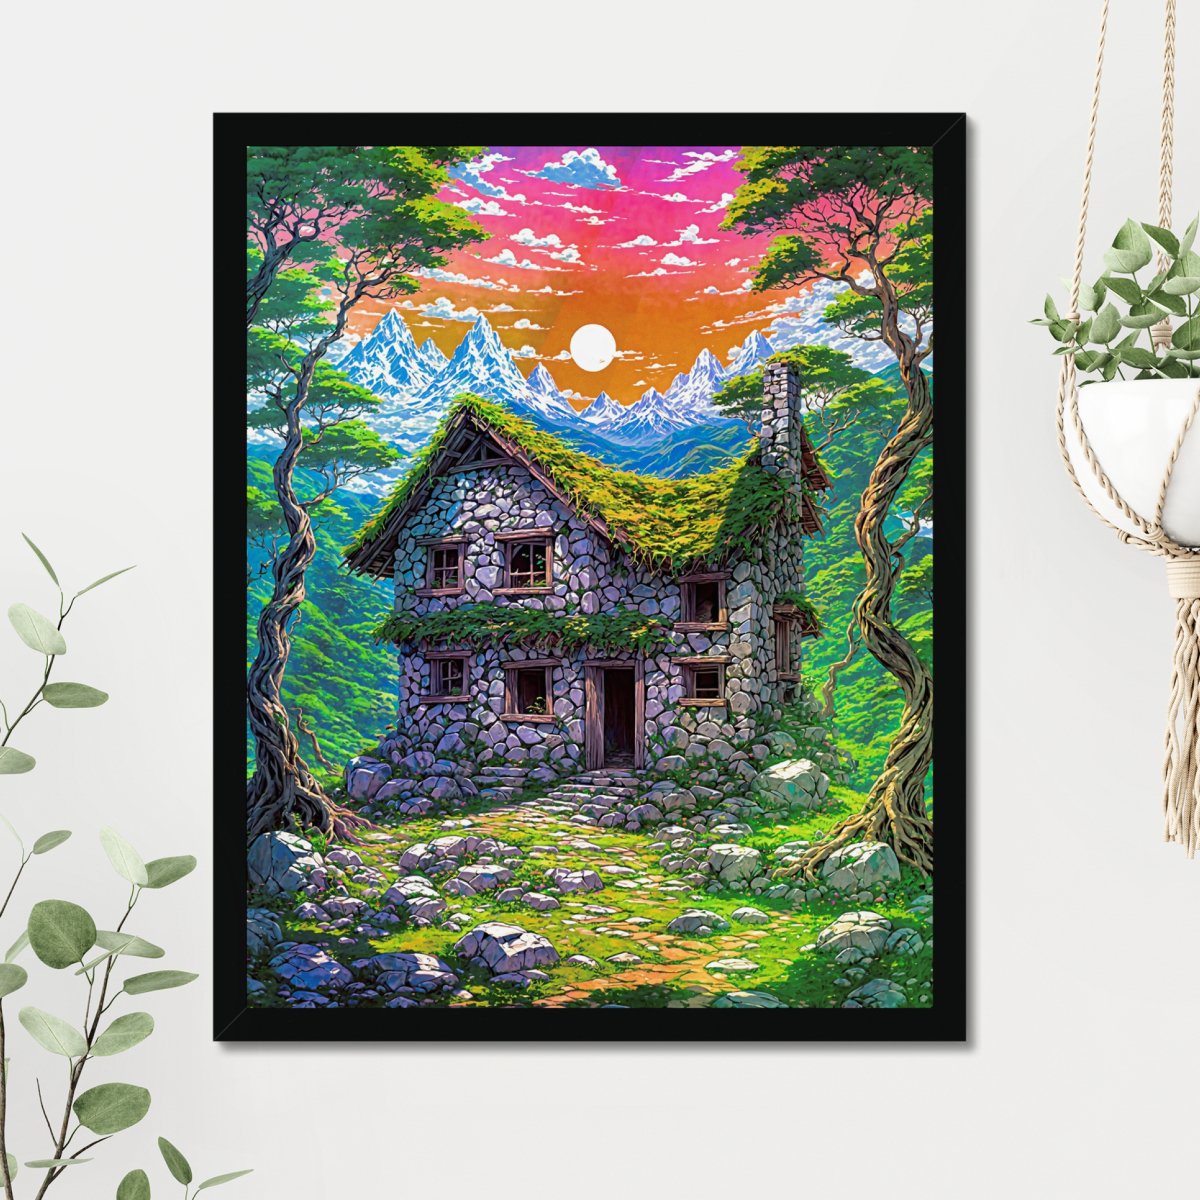 Forsaken manor - Art print - Poster - Ever colorful